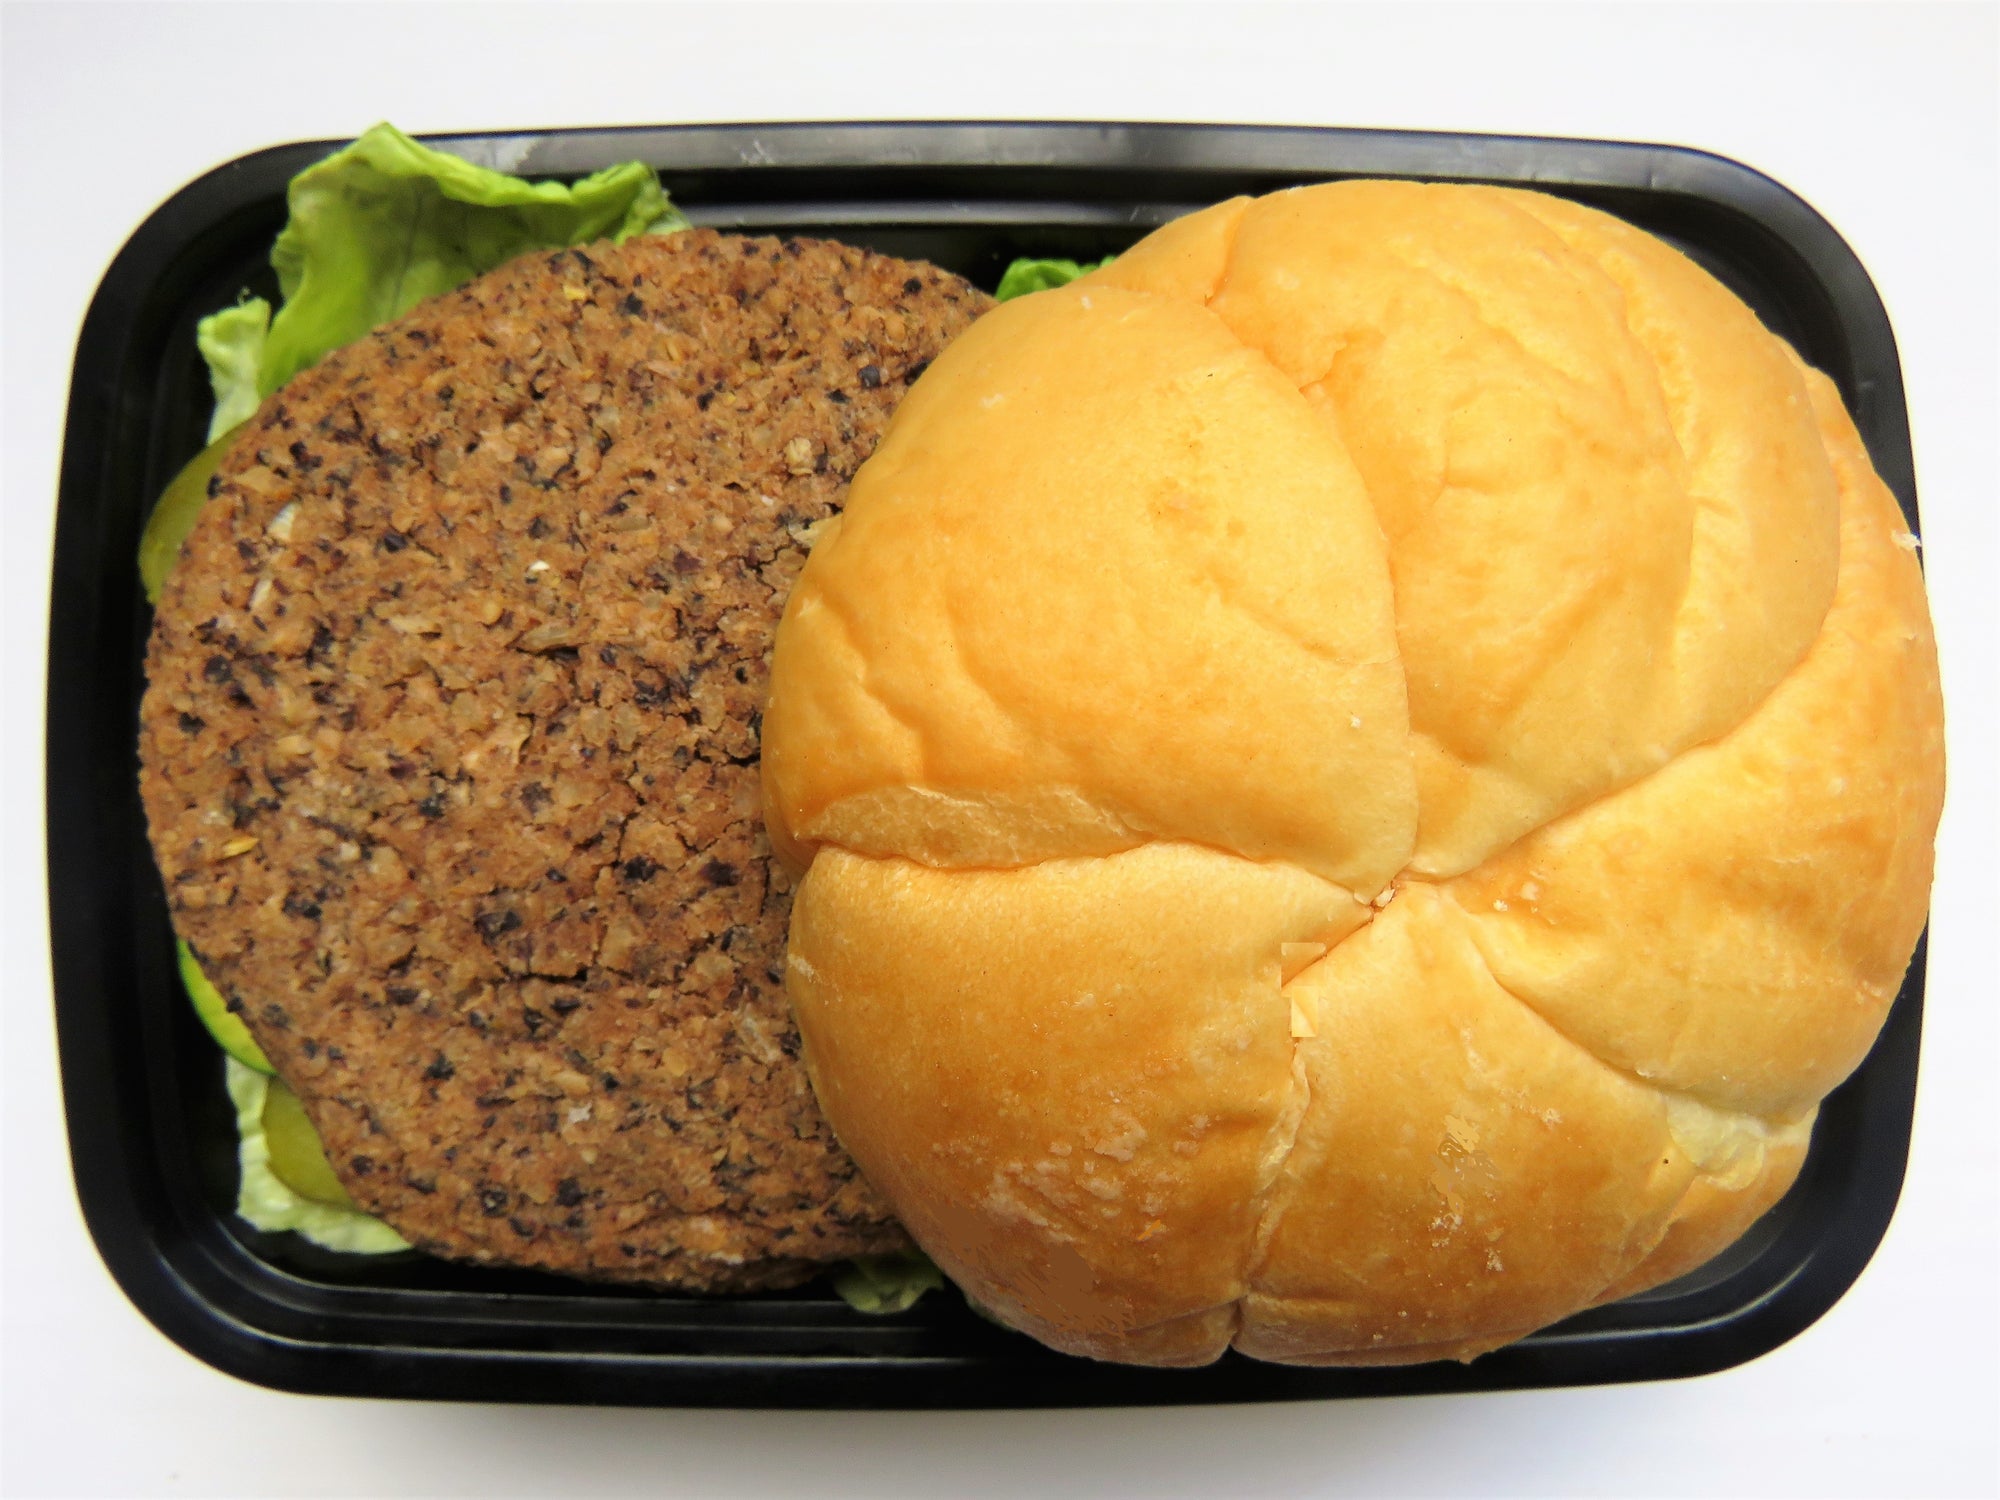 Veggie Burger on Bun - GreenMeal Inc.